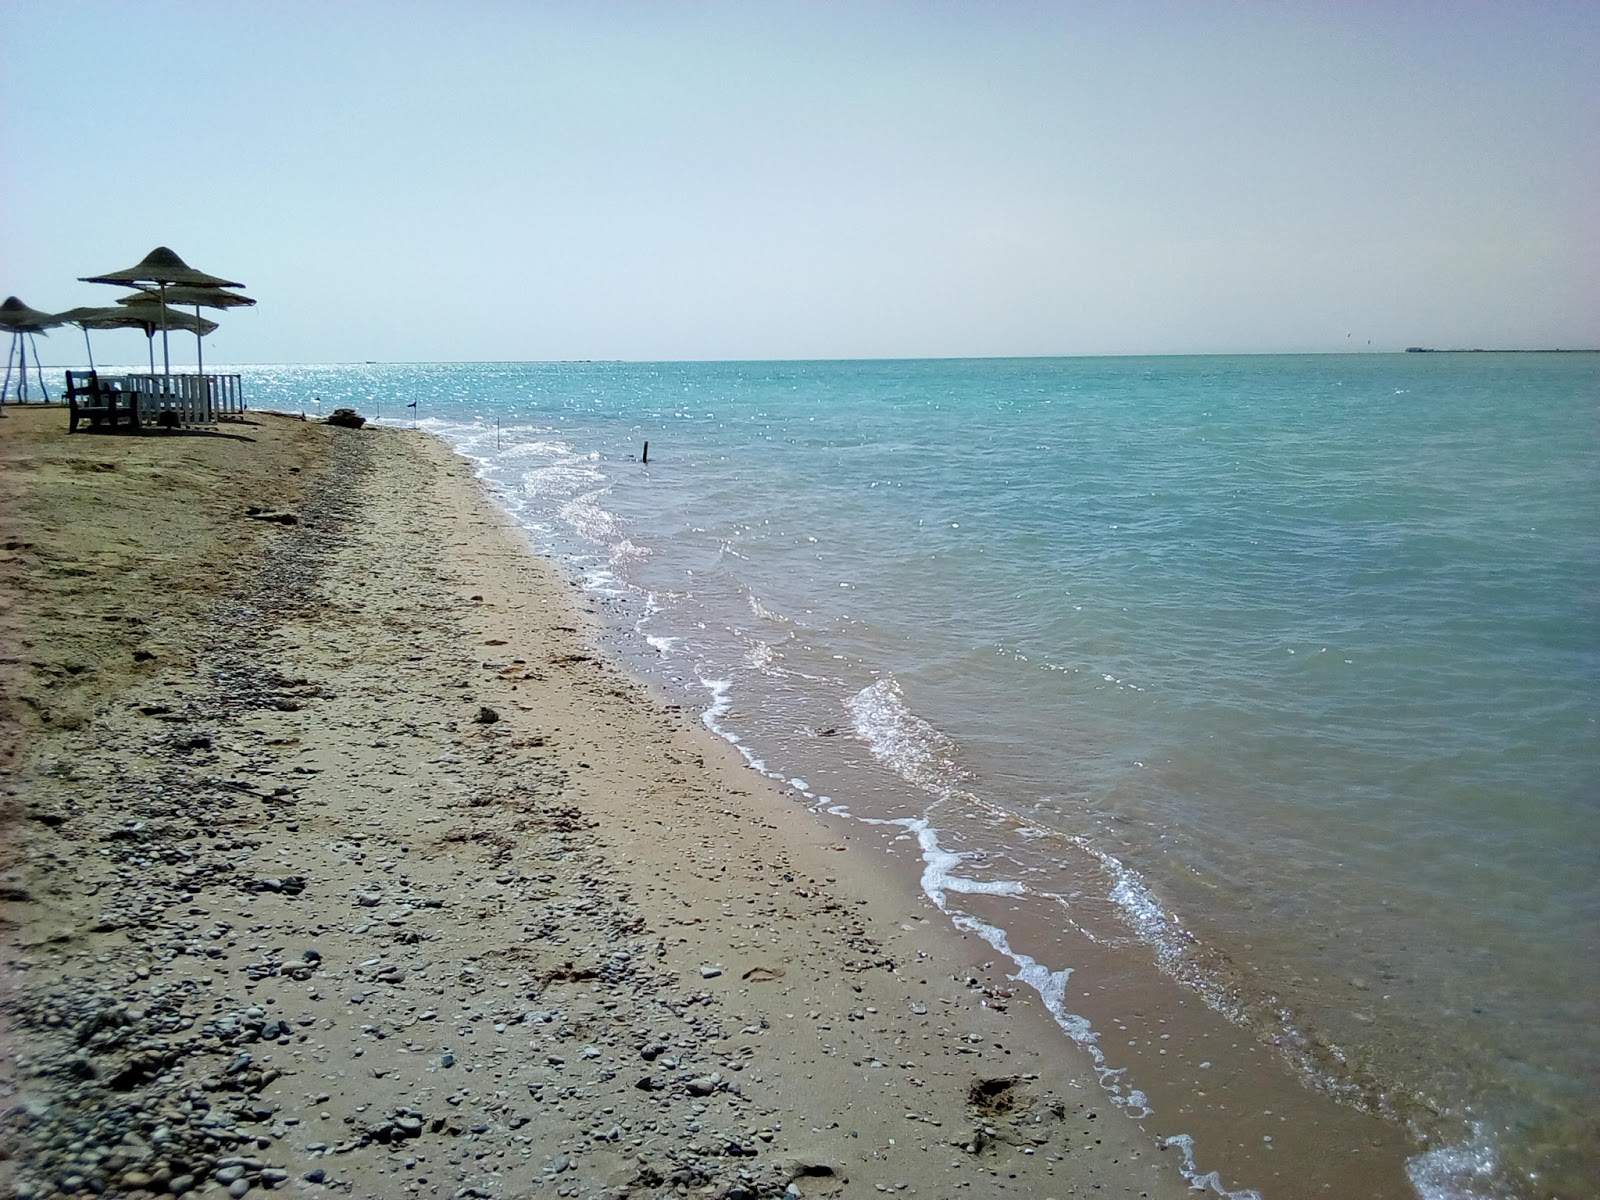 Fotografie cu Ras Sidr beach zonele de facilități